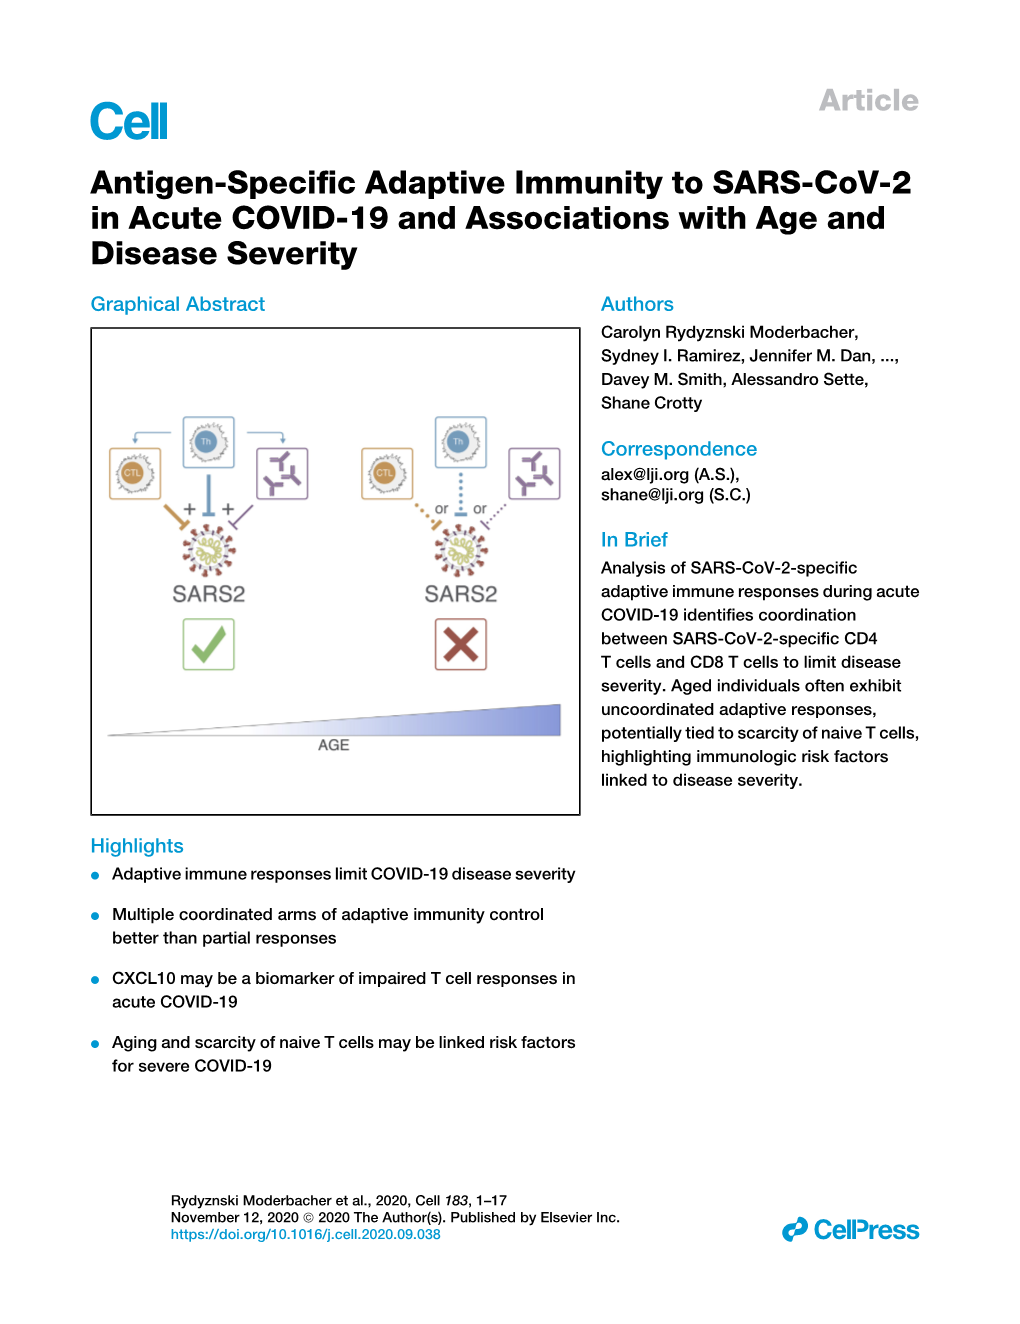 Antigen-Specific Adaptive Immunity to SARS-Cov-2 in Acute COVID-19